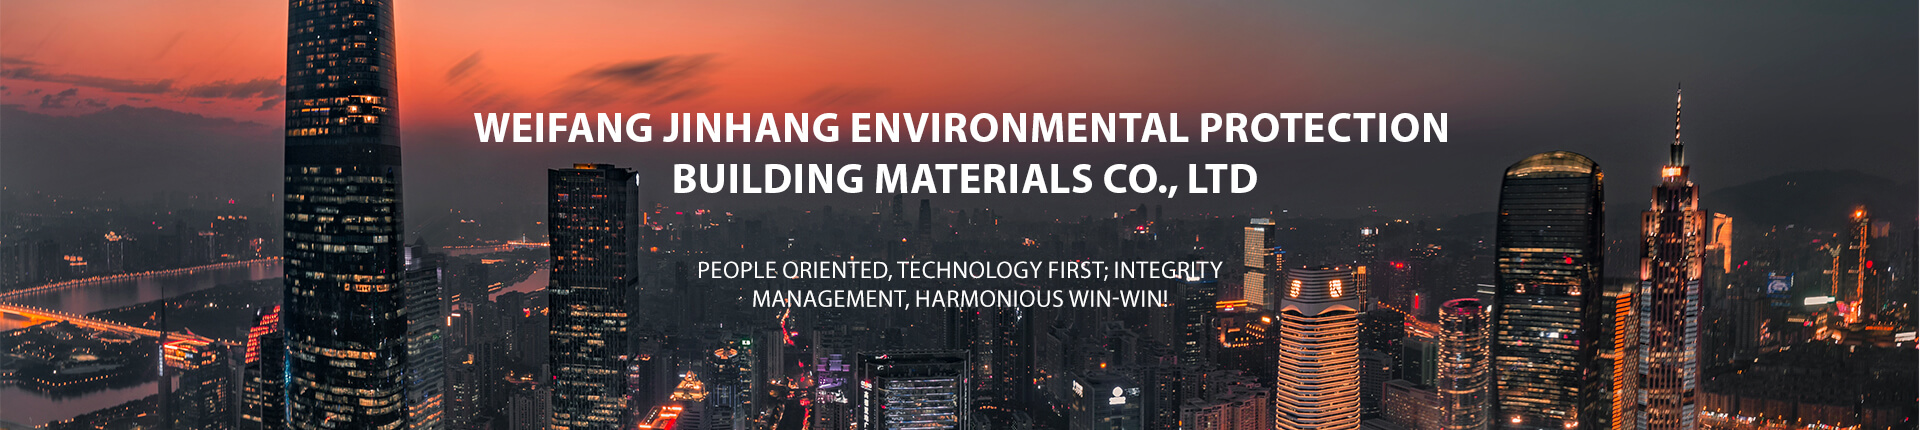 Weifang Jinhang Environmental Protection